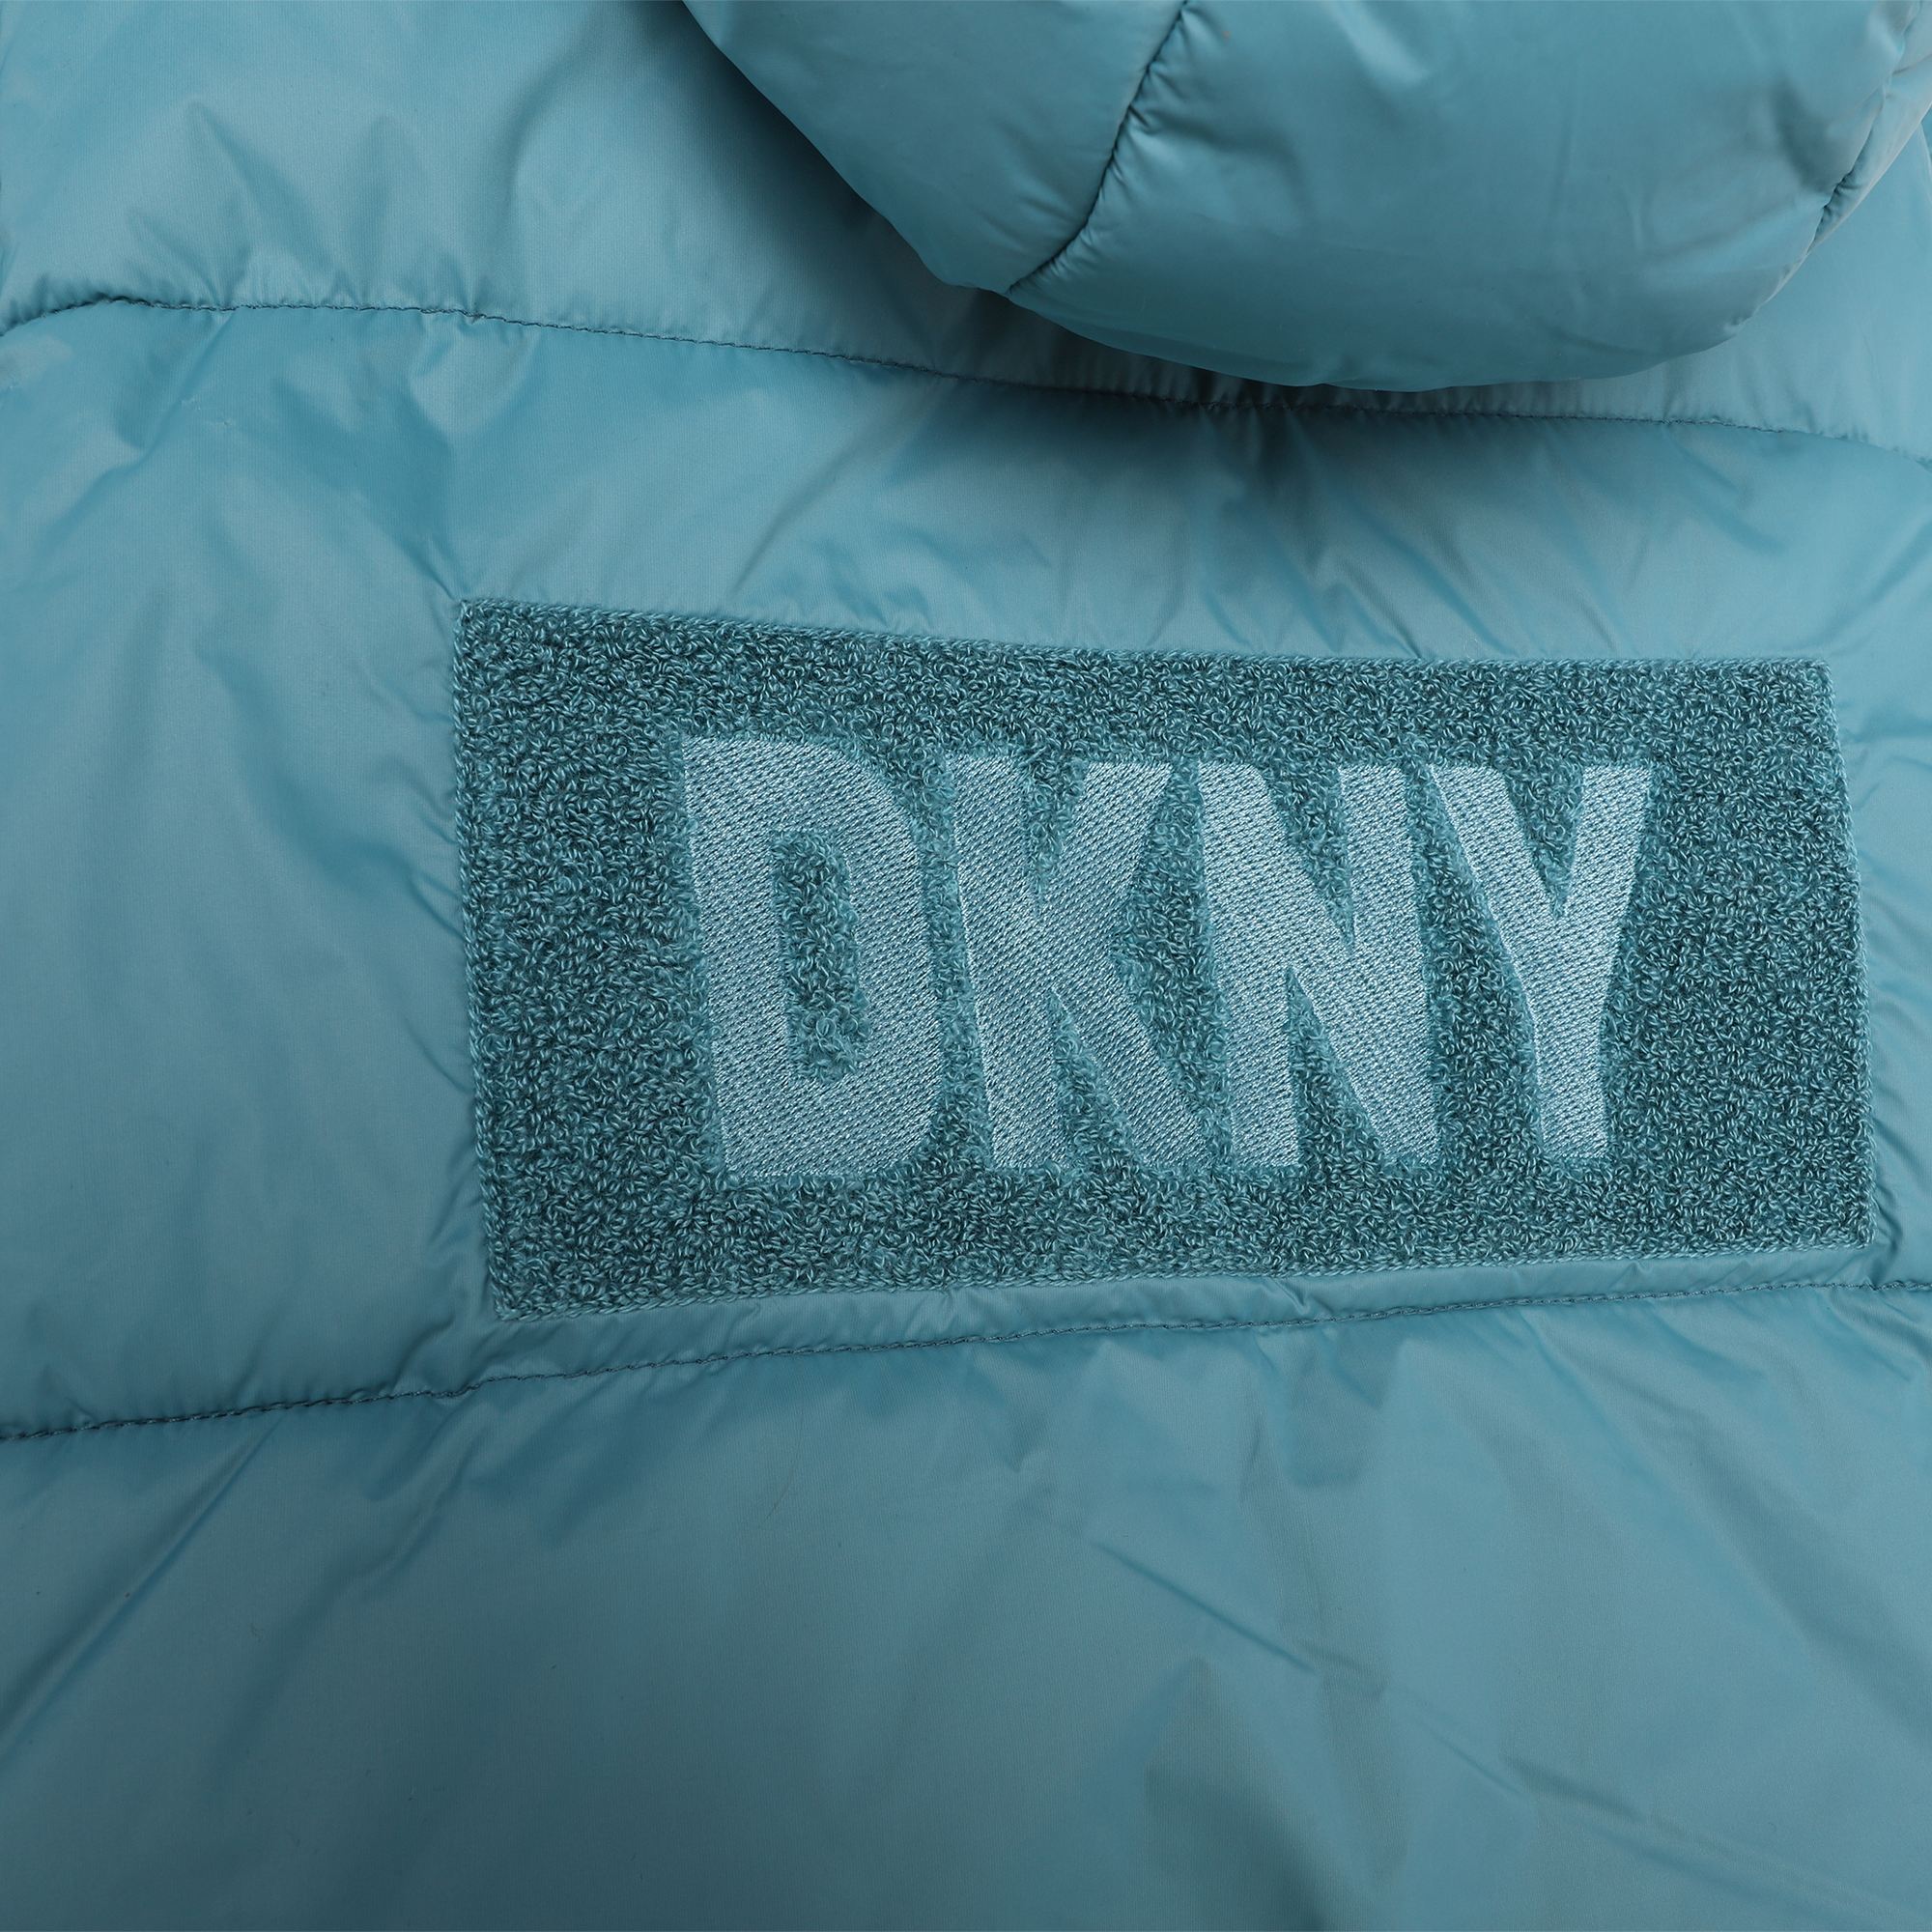 Ärmellose Jacke mit Kapuze DKNY Für UNISEX